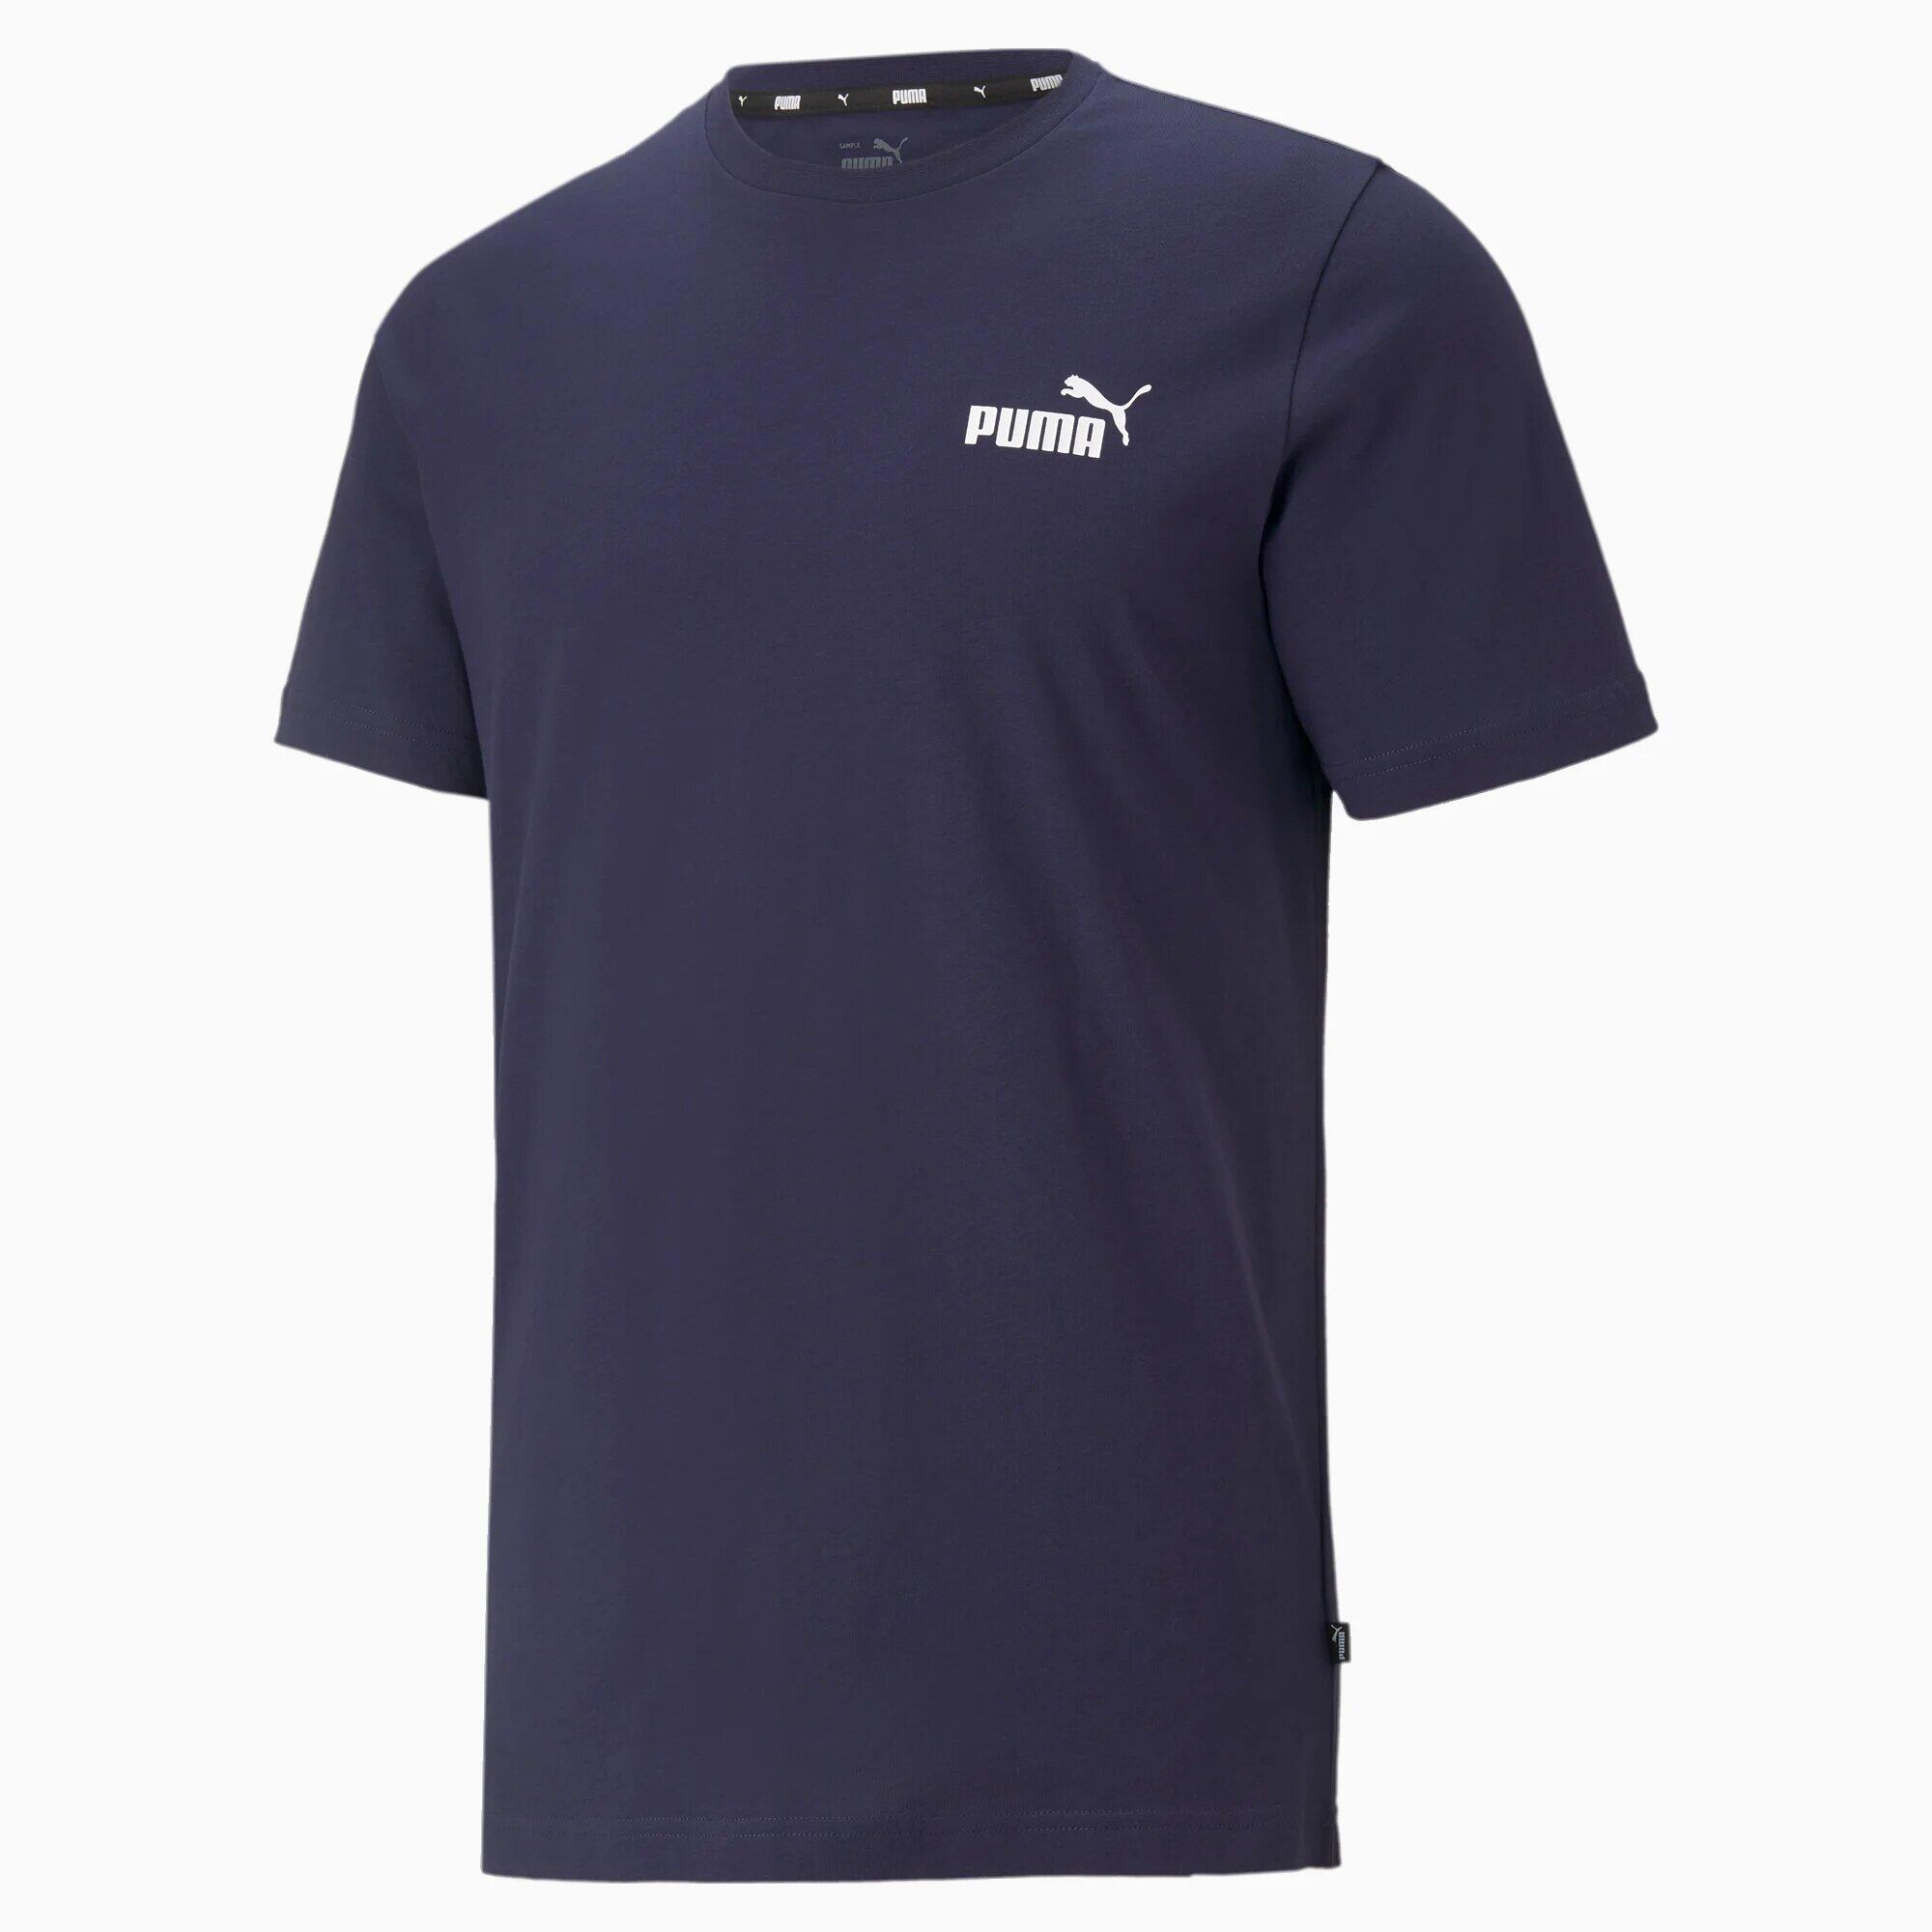 PUMA PUMA Mens Essentials Small Logo T-Shirt Tee Top - Peacoat